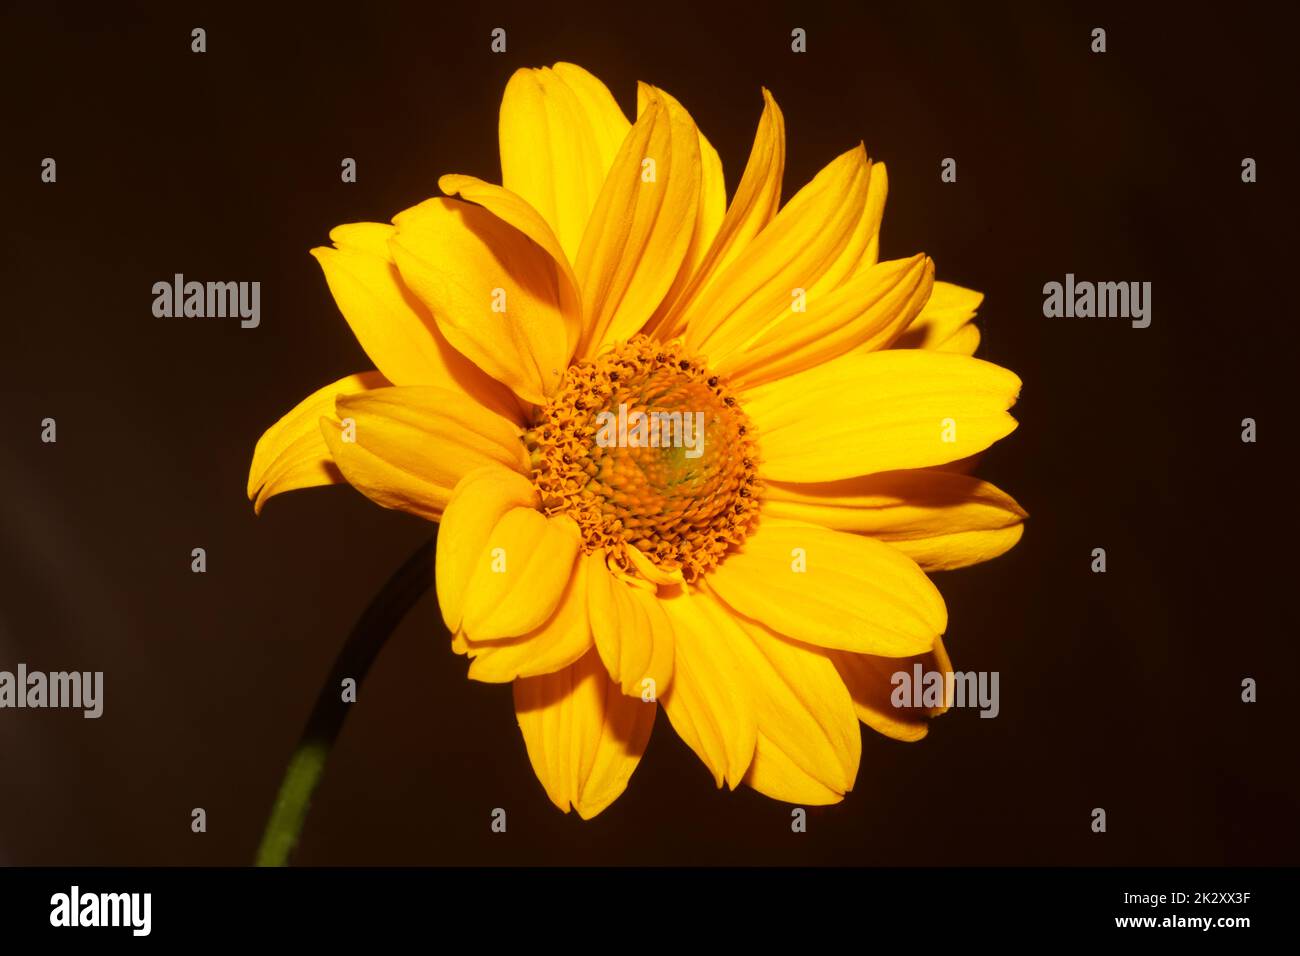 Fleur jaune gros plan botanique Heliopsis helianthoides famille compositae grand format métal imprime des photos de la nature de haute qualité Banque D'Images